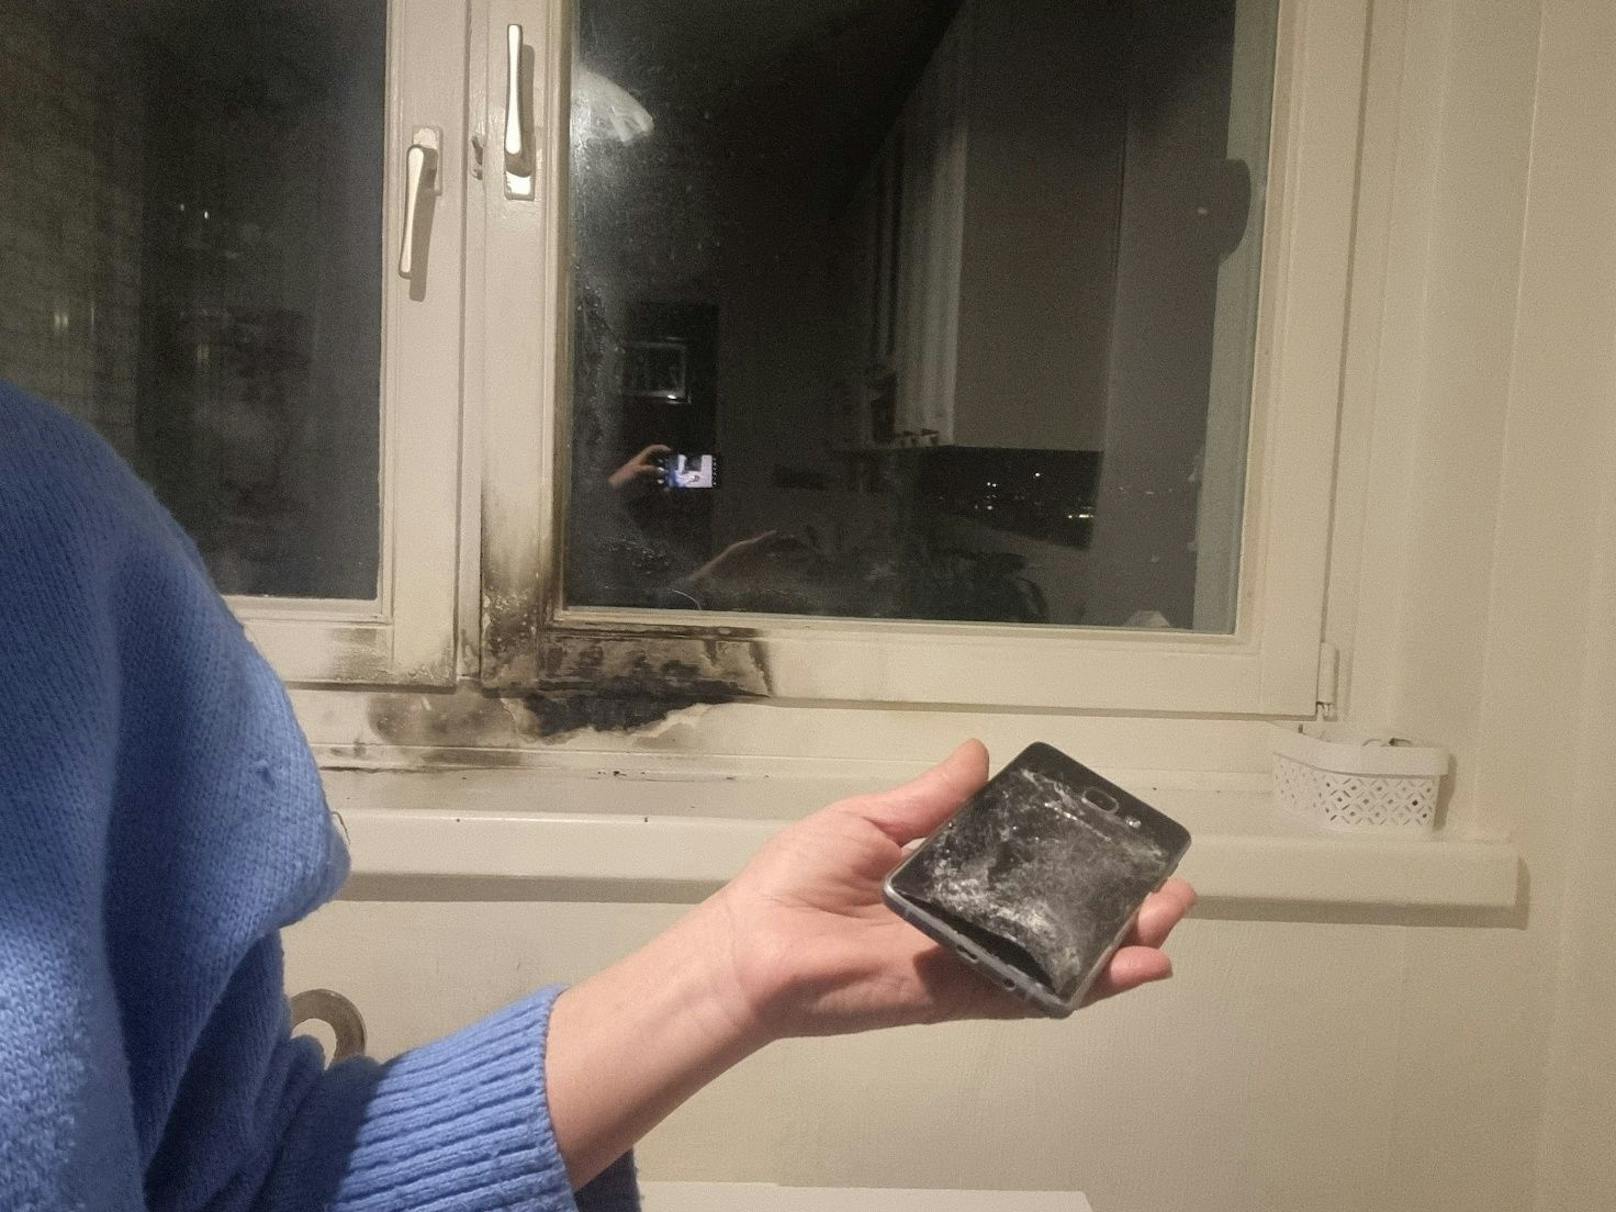 Der Akku des Smartphones explodierte, als die Wienerin unter der Dusche stand. Im Anschluss brannte es auf der Fensterbank.